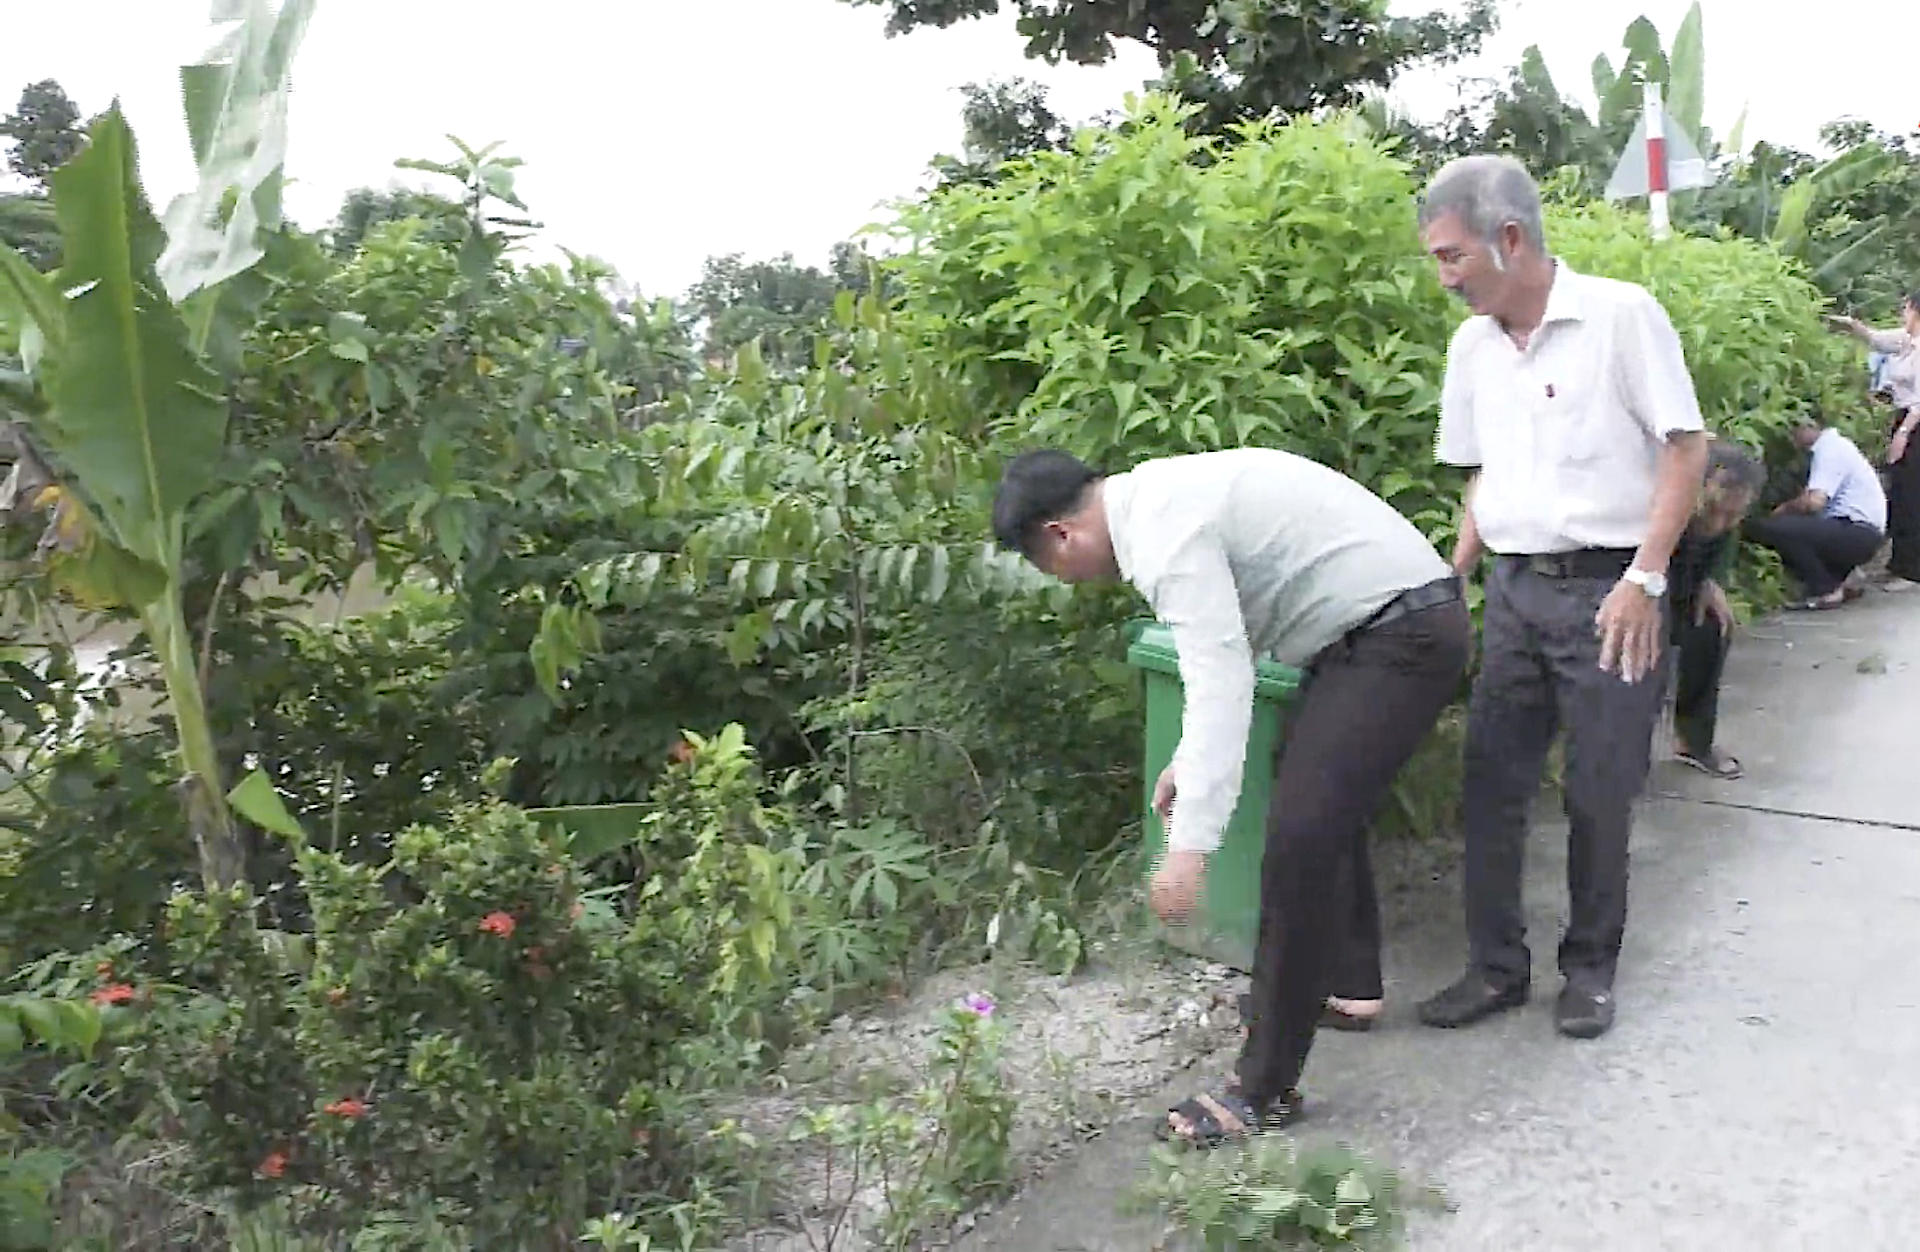 Tiền Giang: Xã Phú An (Cai Lậy) chuẩn bị ra mắt nông thôn mới nâng cao